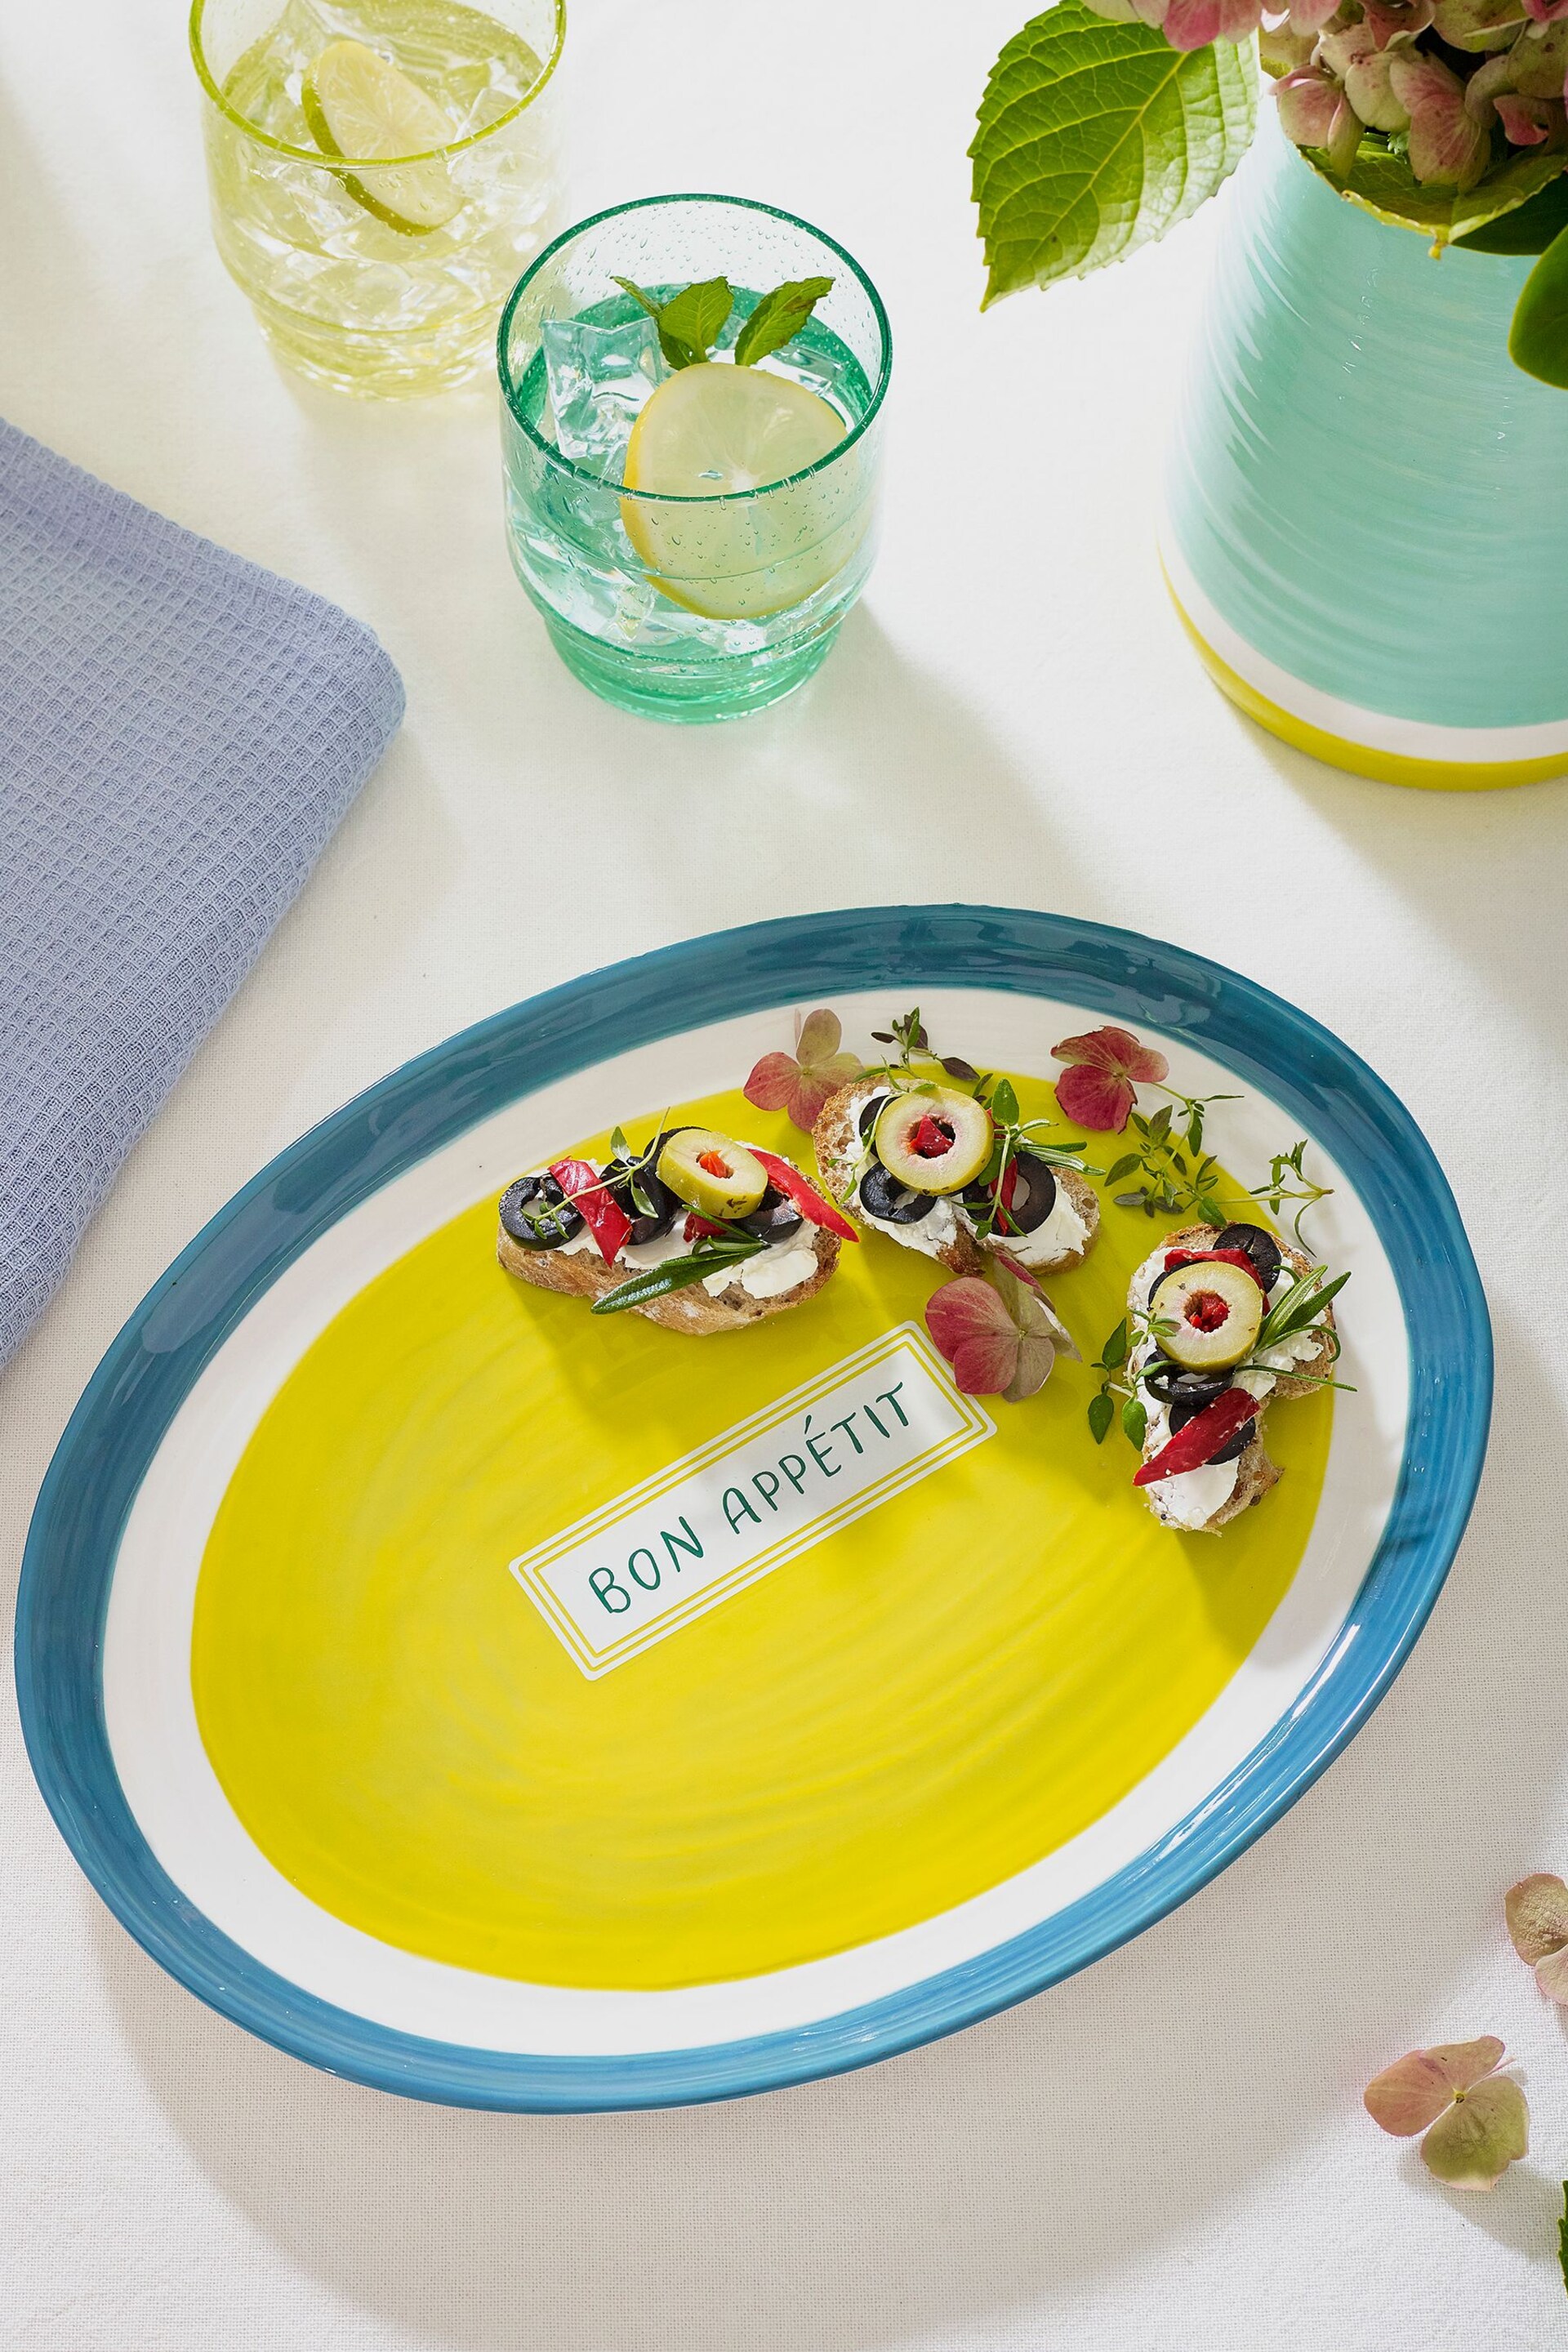 Teal Blue Bon Appétit Platter - Image 1 of 4